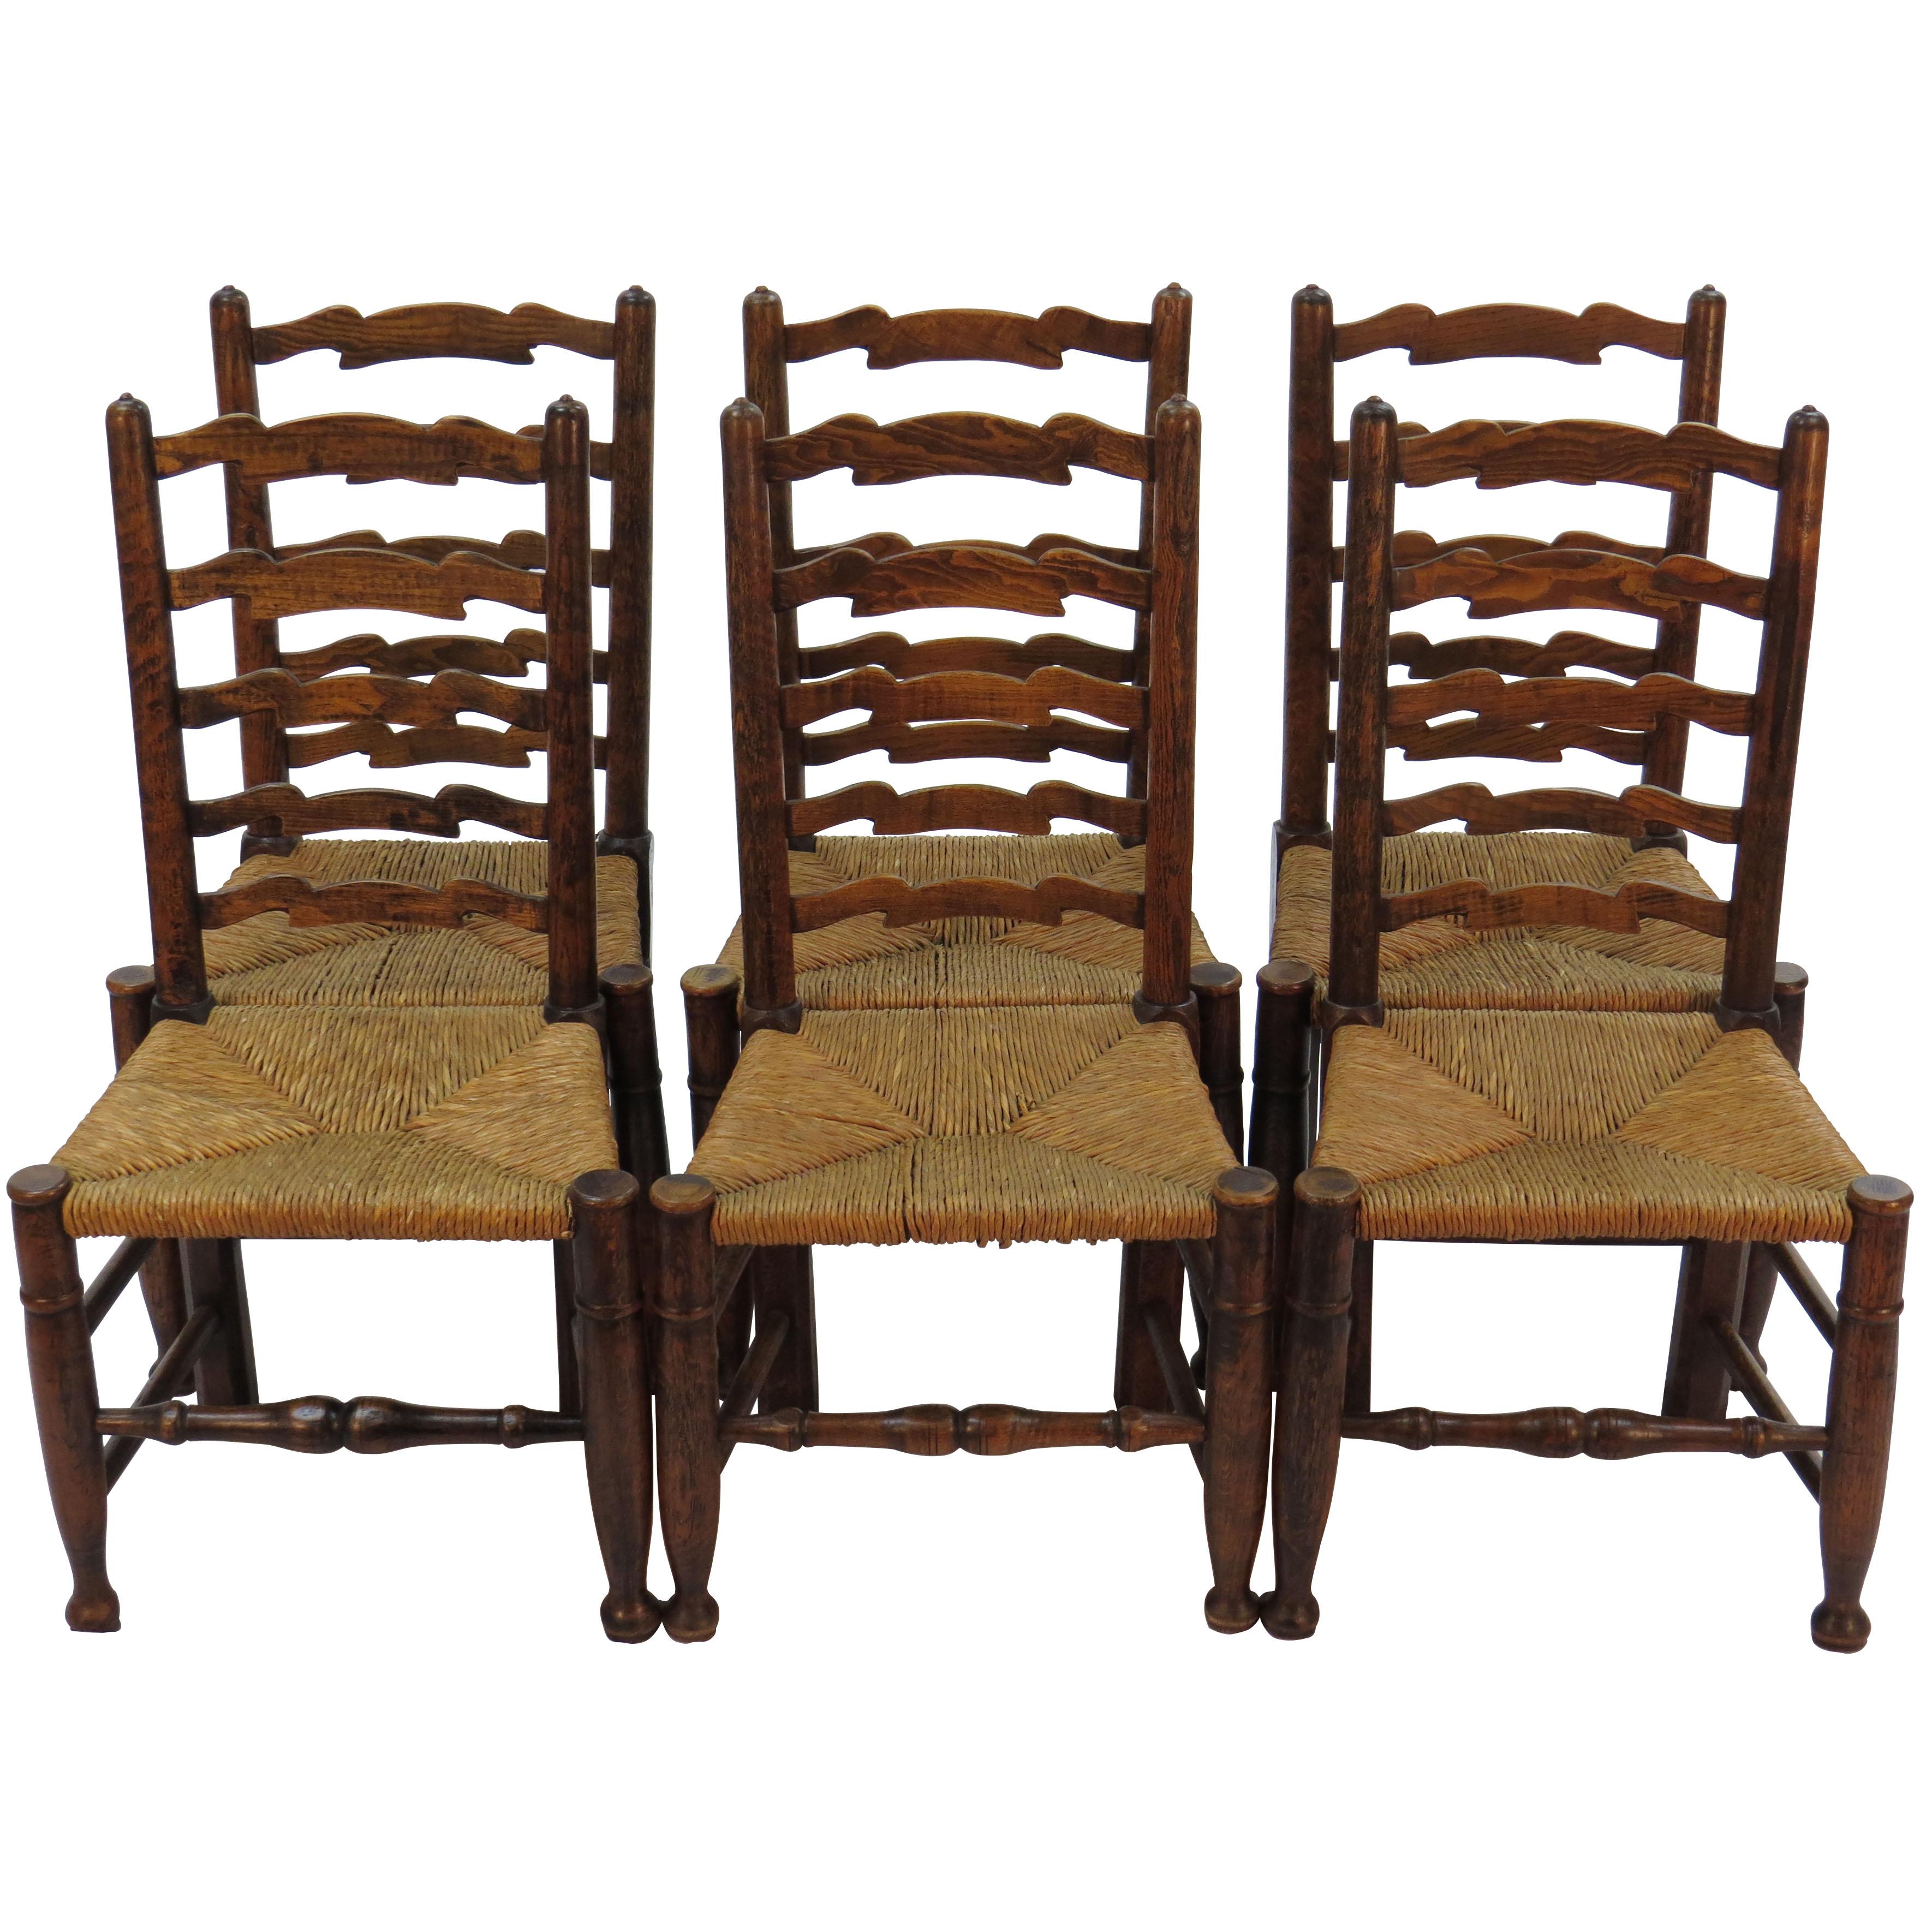 English Oak Set of Six Ladder Back Dining Kitchen Chairs